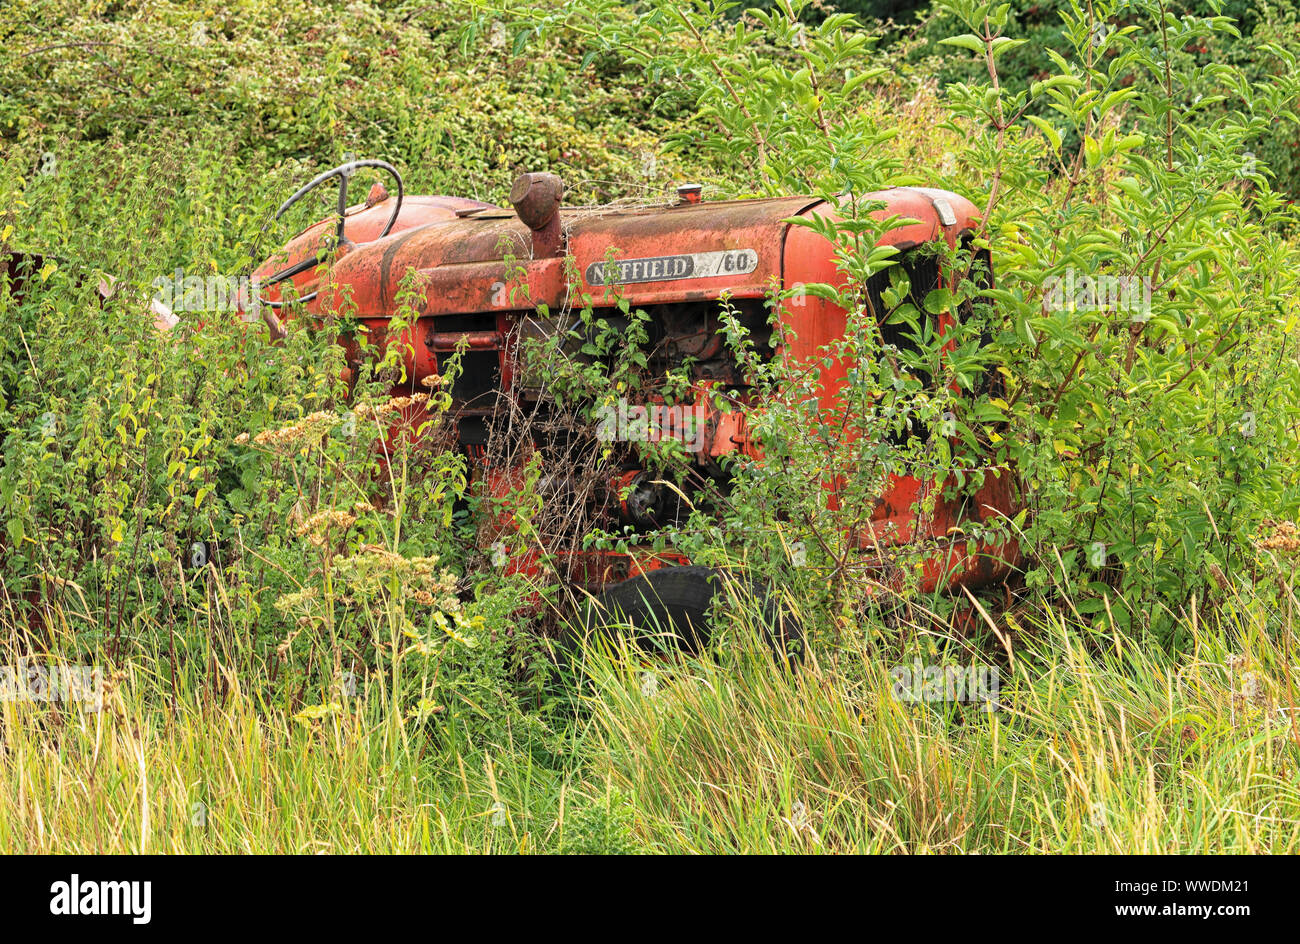 Abgebrochene Vintage Nuffield Traktor mit Unkraut wachsen aus ihm heraus Stockfoto